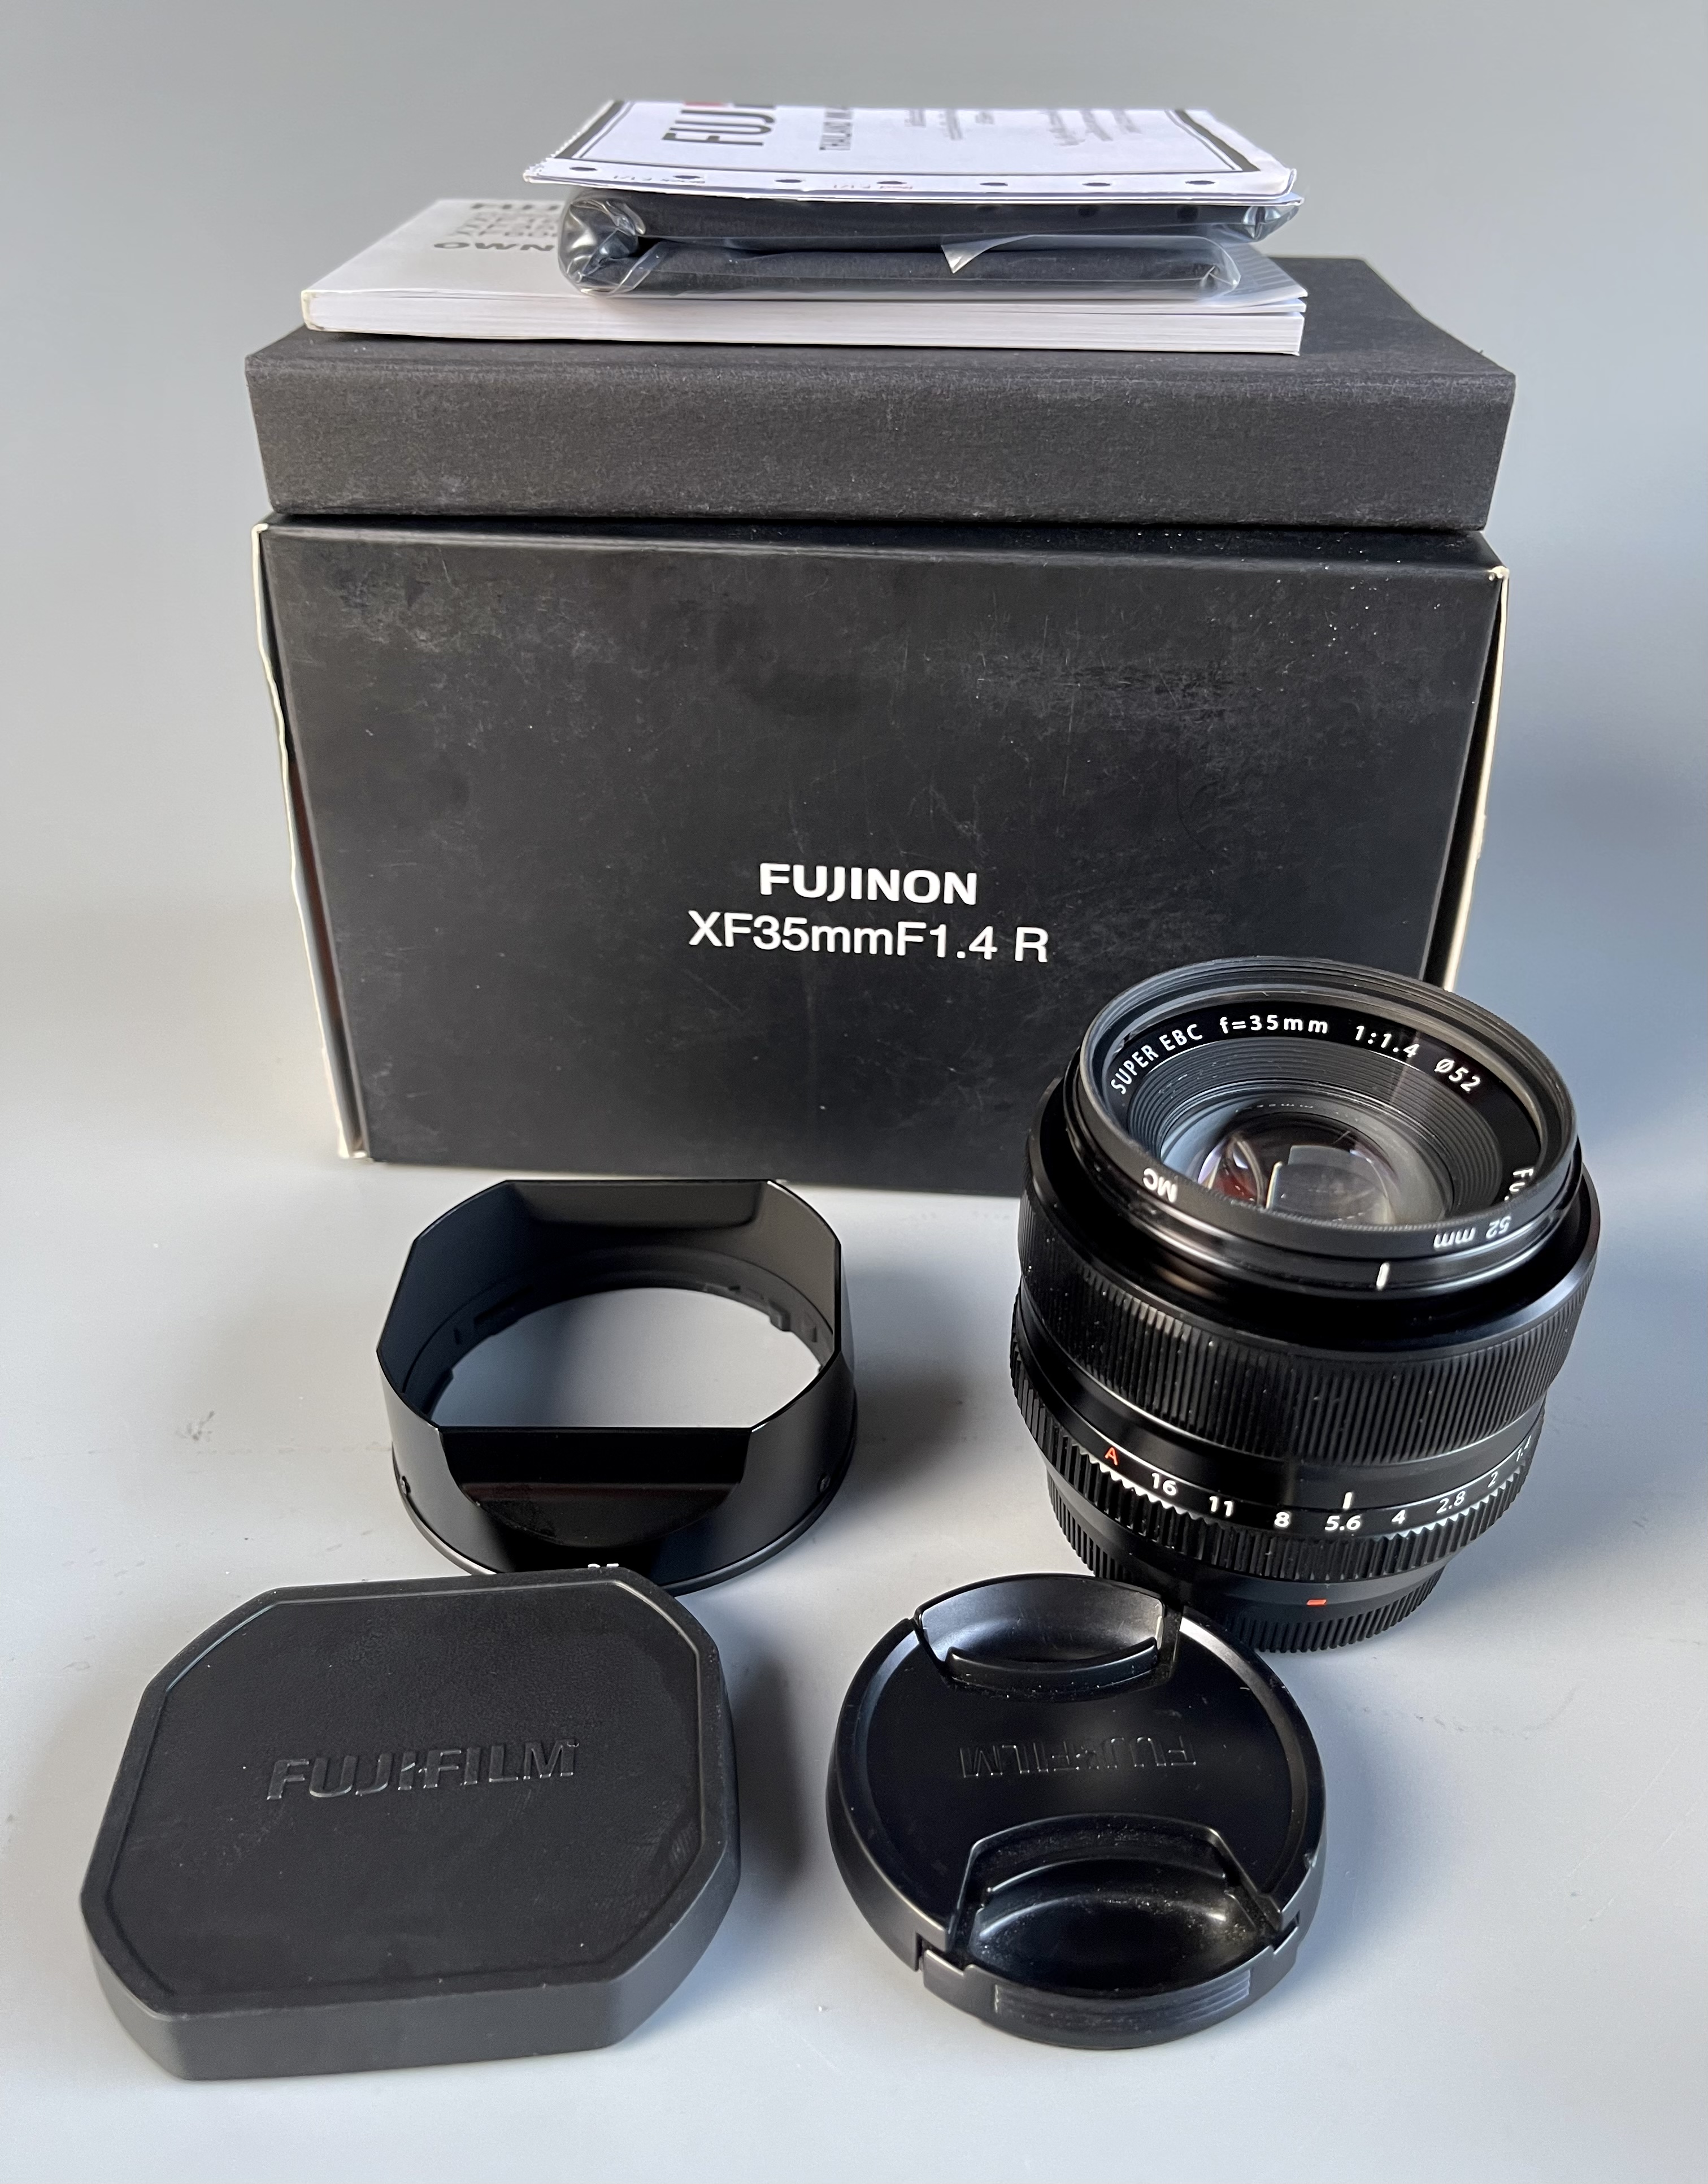 ขาย LENS Fujinon XF 35mm f1.4Rสภาพสวย หมดประกันศูนย์ - รับฝาก-รับ